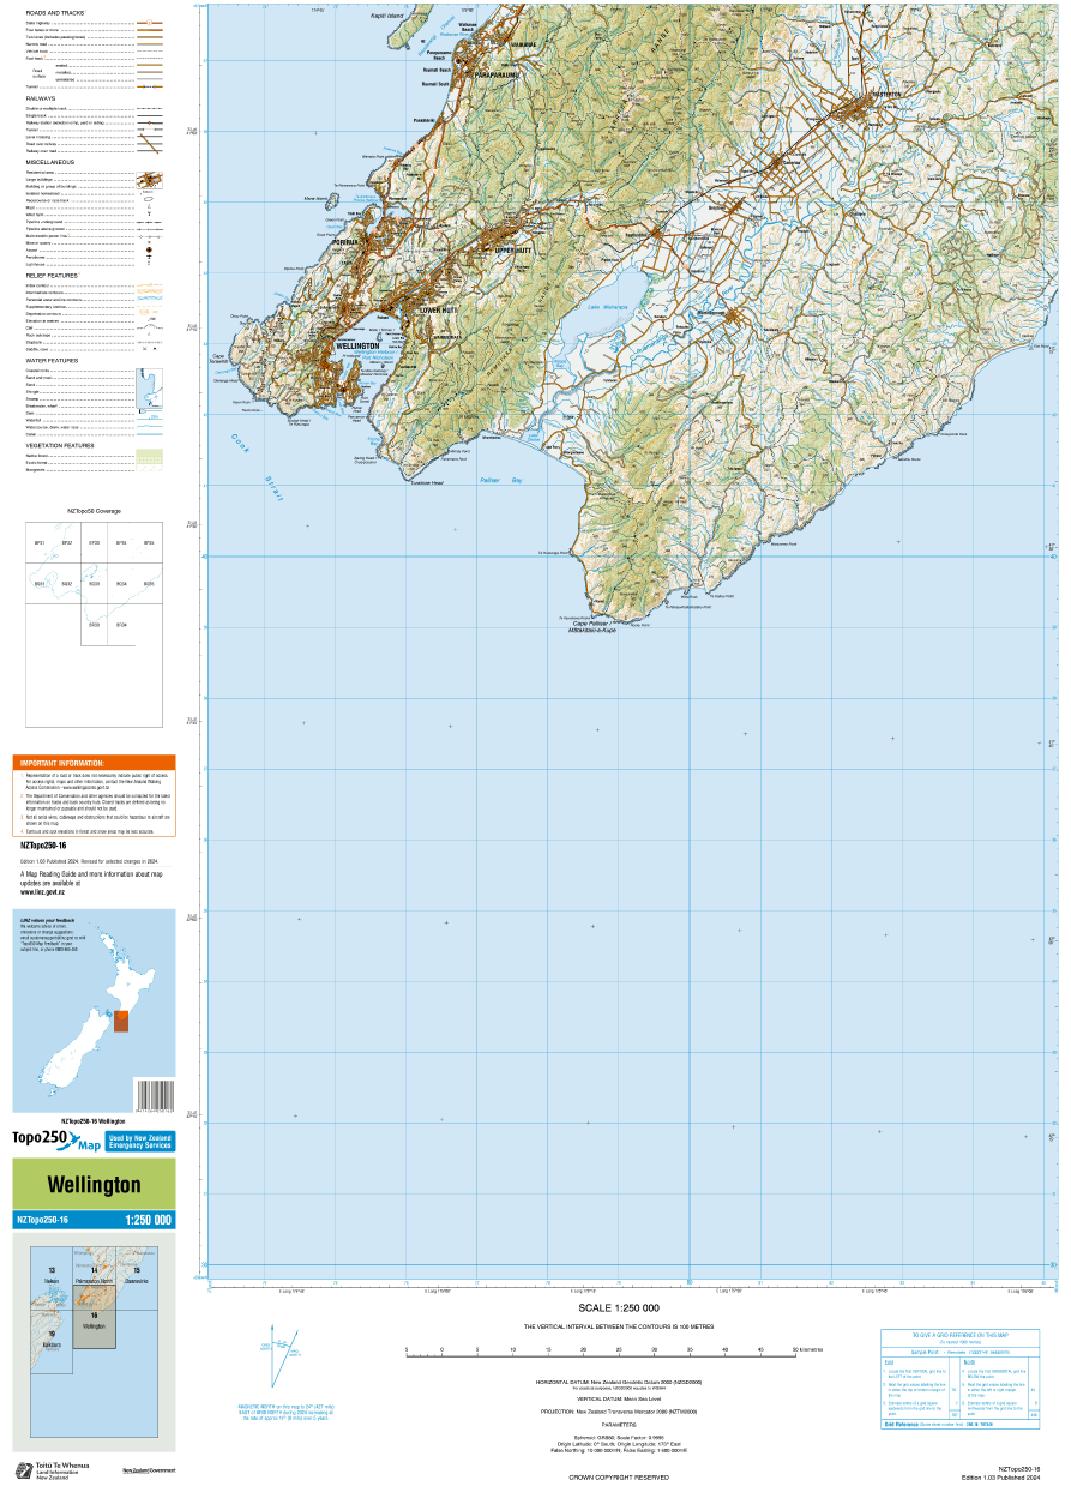 Topo map of Wellington